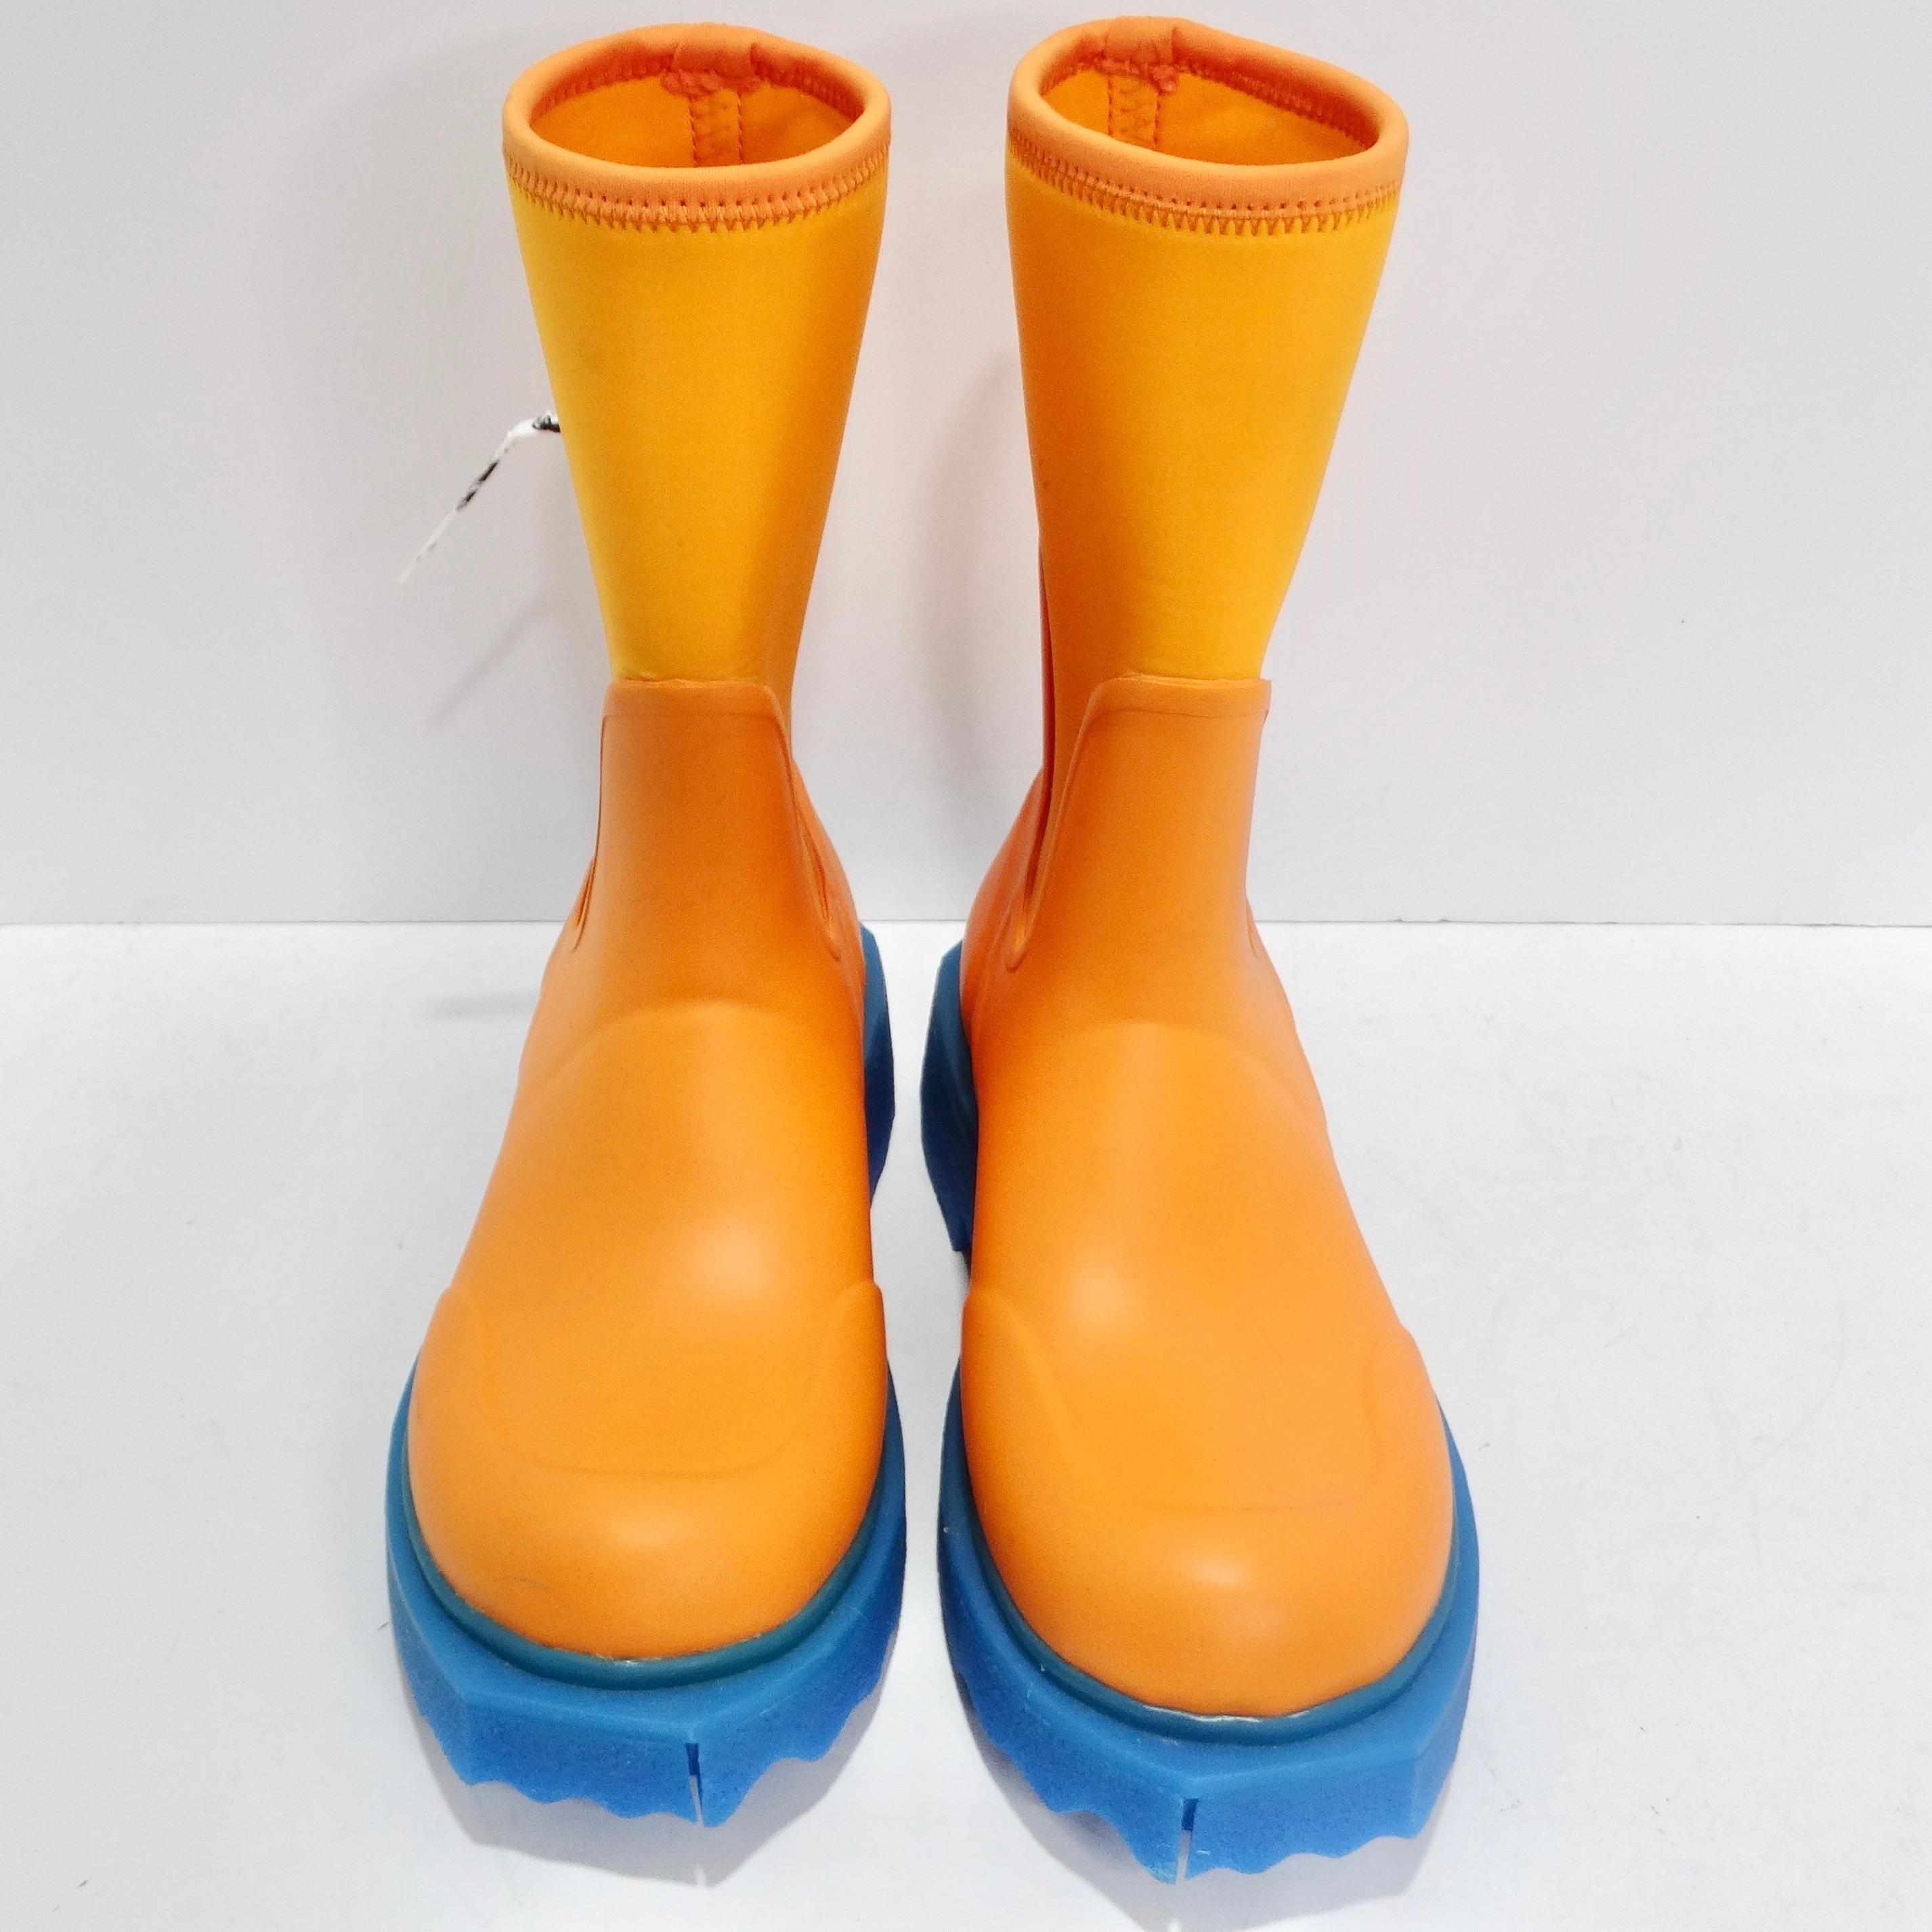 Mettez la main sur les Off-White Orange & Blue Rubber Boots - un ajout audacieux et ludique à votre collection de chaussures qui défie les conventions et apporte une bouffée d'énergie aux jours de pluie. Les bottes présentent une teinte orange